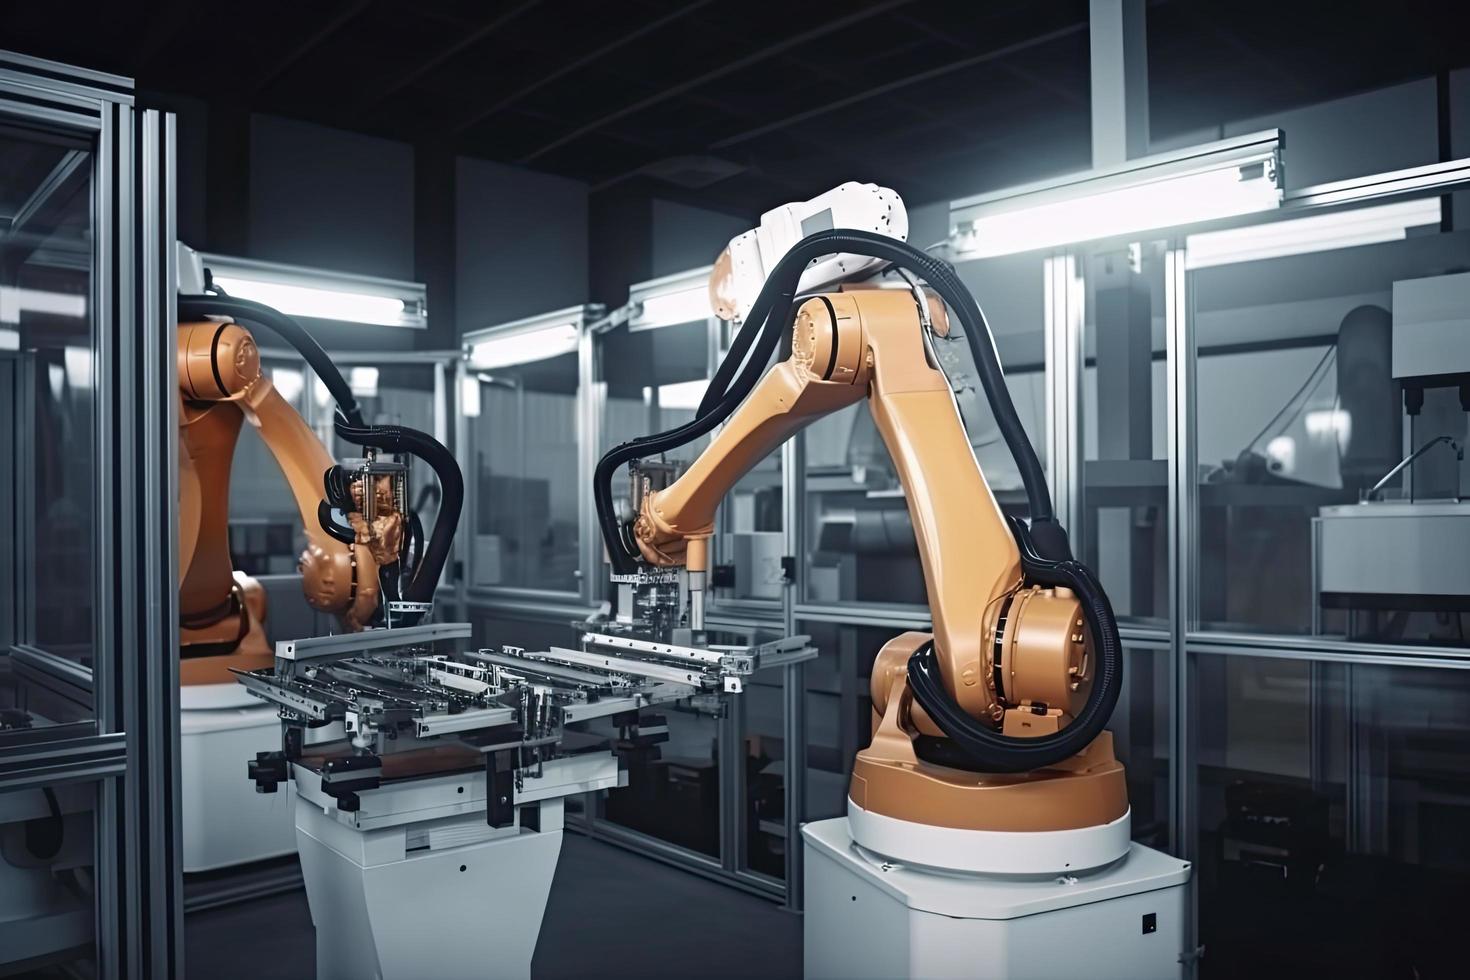 industrial máquina robot, inteligente moderno fábrica automatización utilizando avanzado máquinas, industrial 4.0 fabricación proceso foto